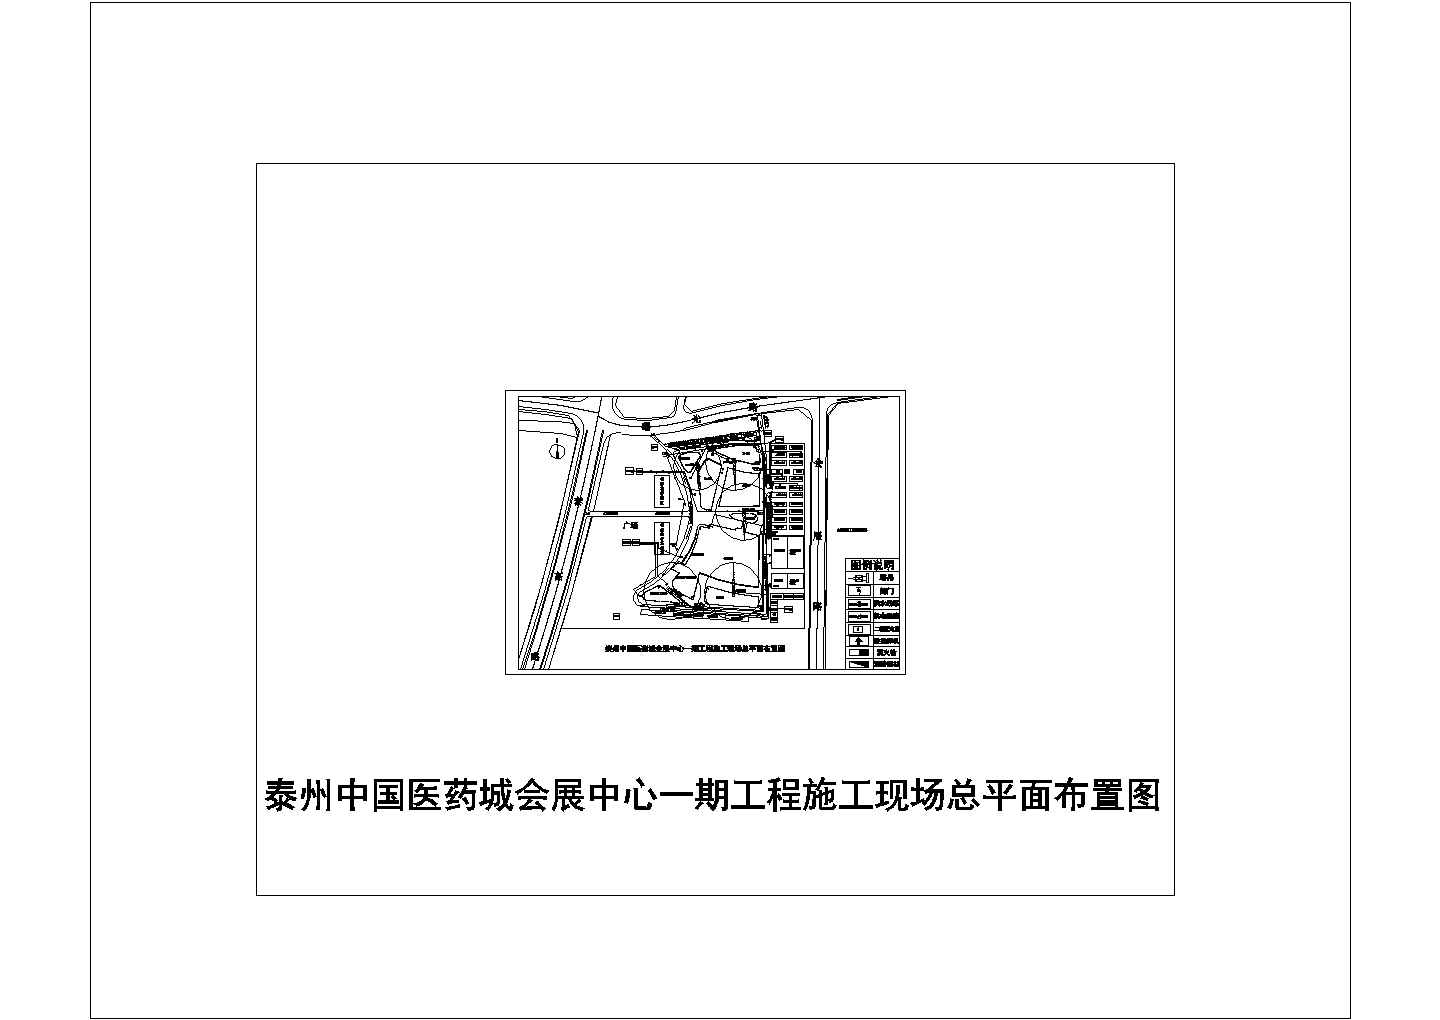 -[江苏]会展中心工程施工现场总平面布置图CAD